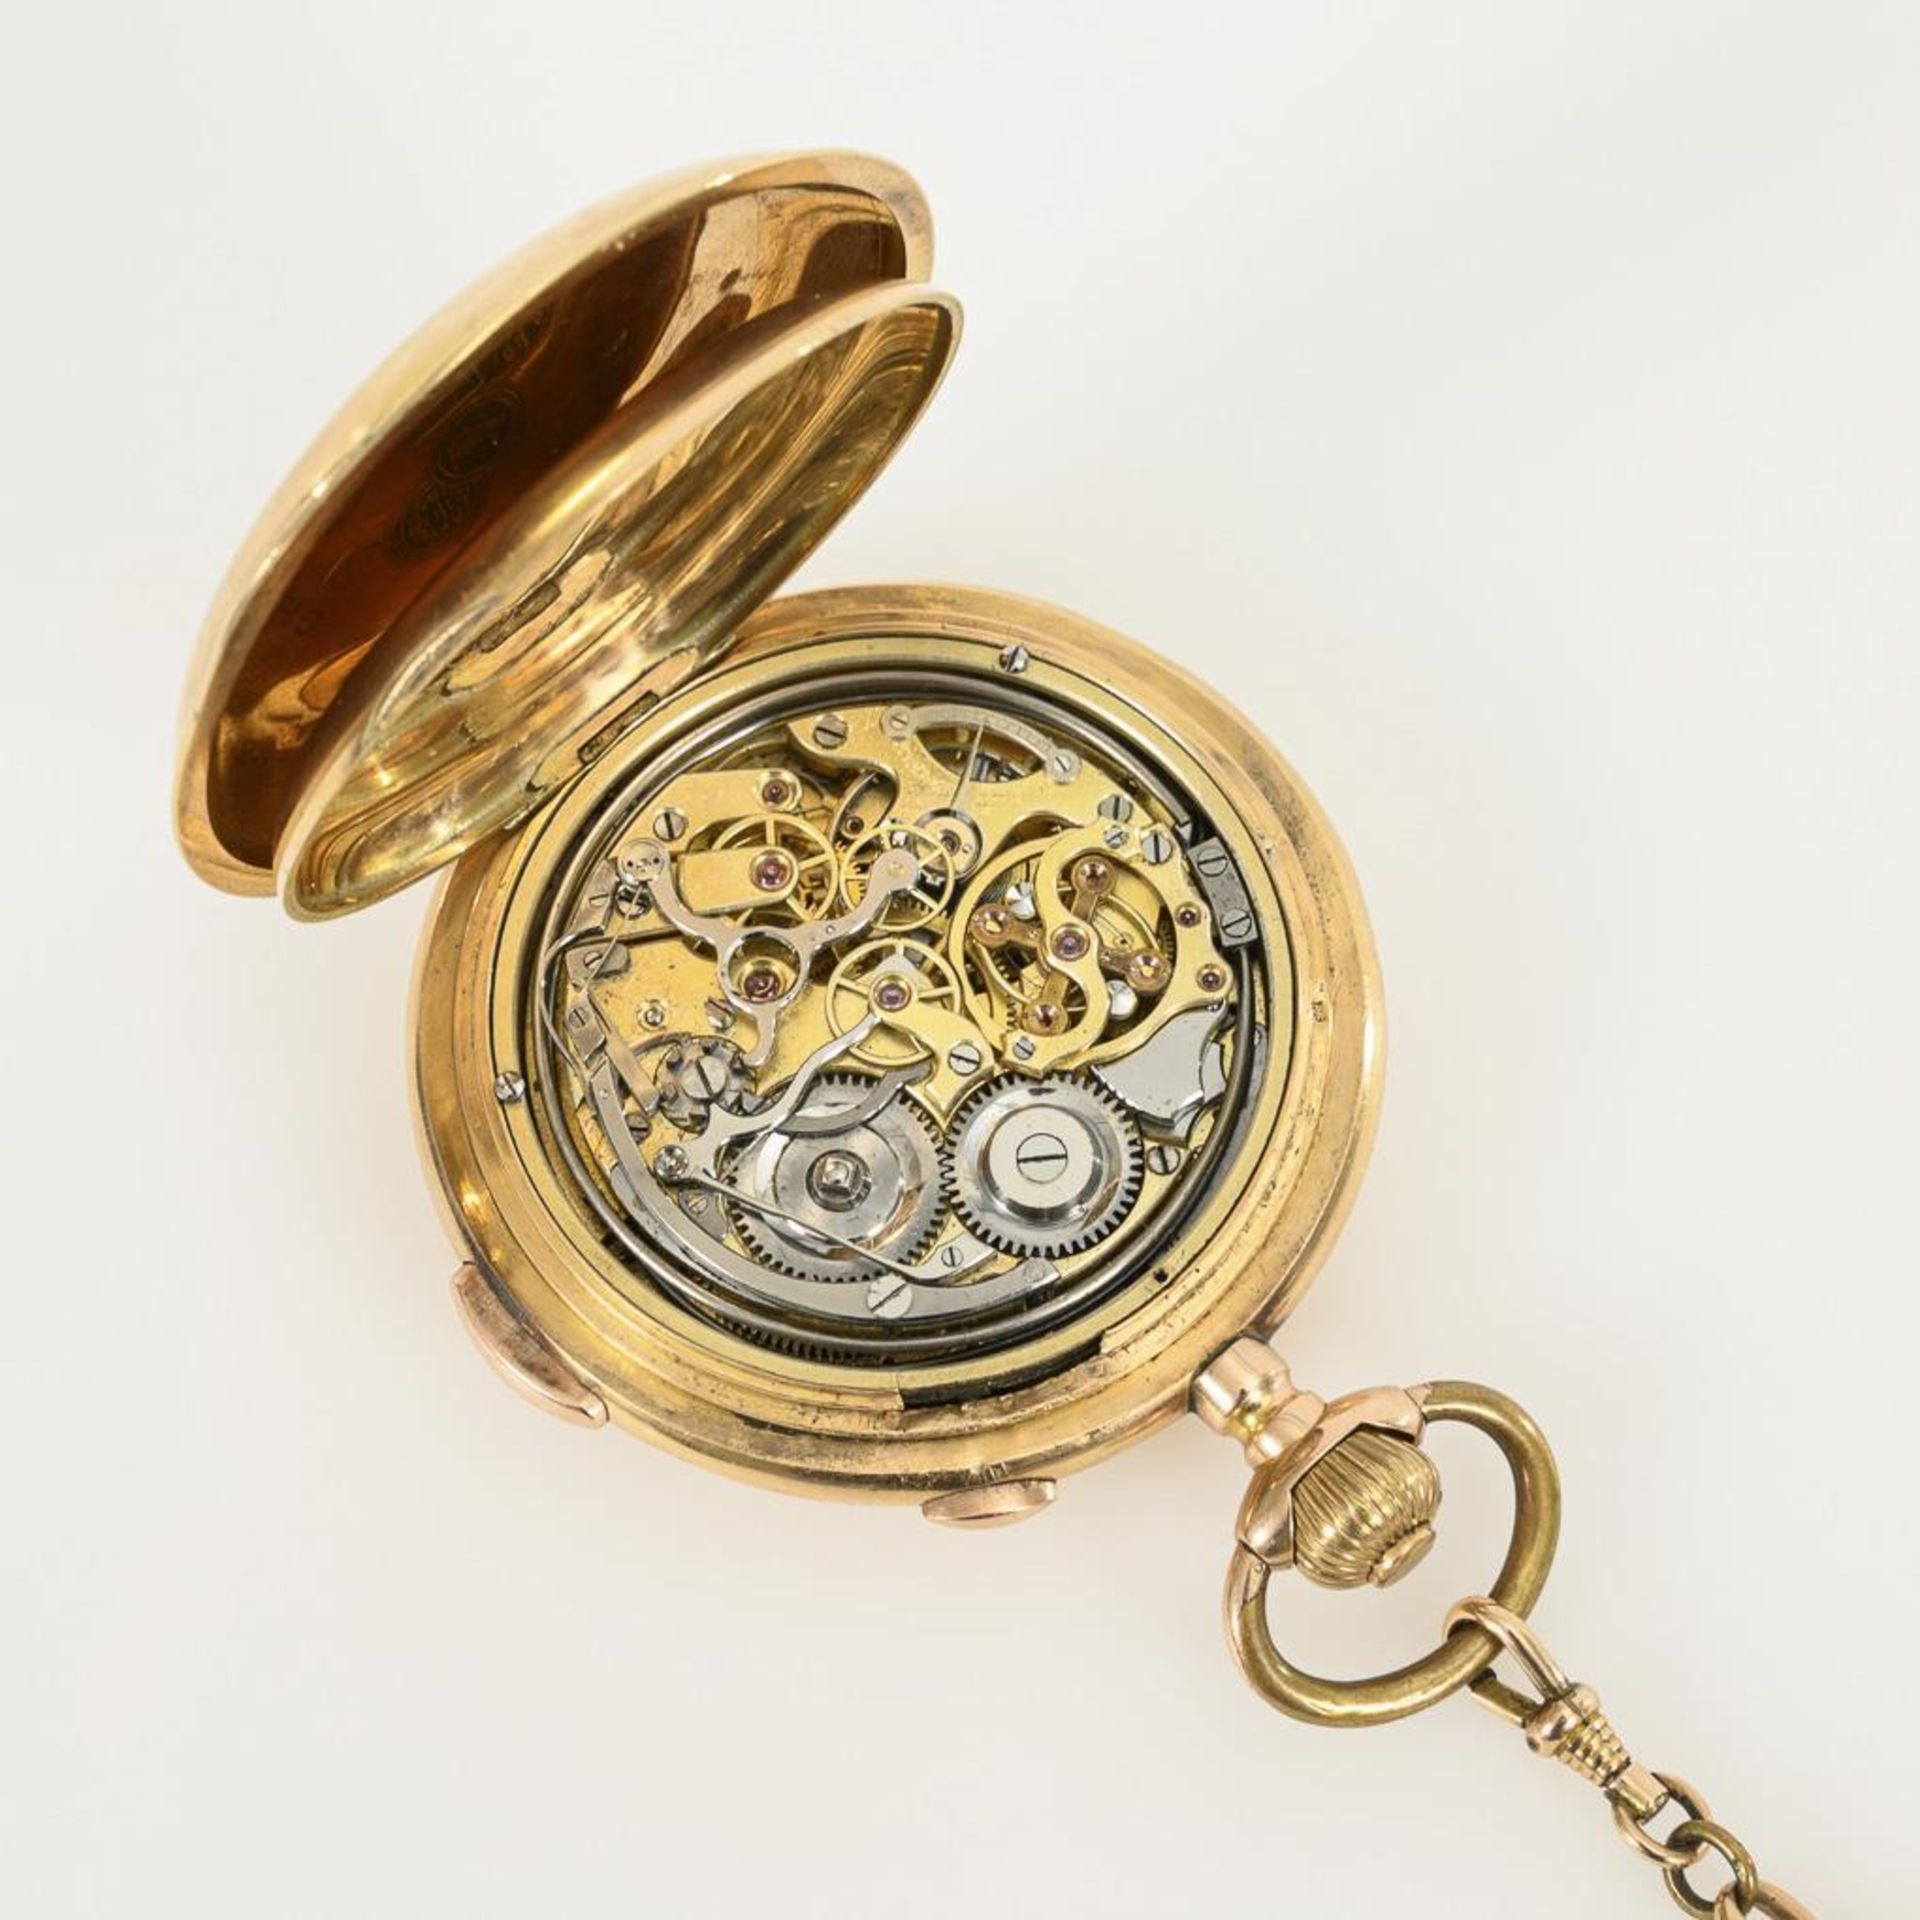 Goldene Savonnette mit Minutenrepetition und Chronograph an goldener Uhrenkette. - Image 5 of 5